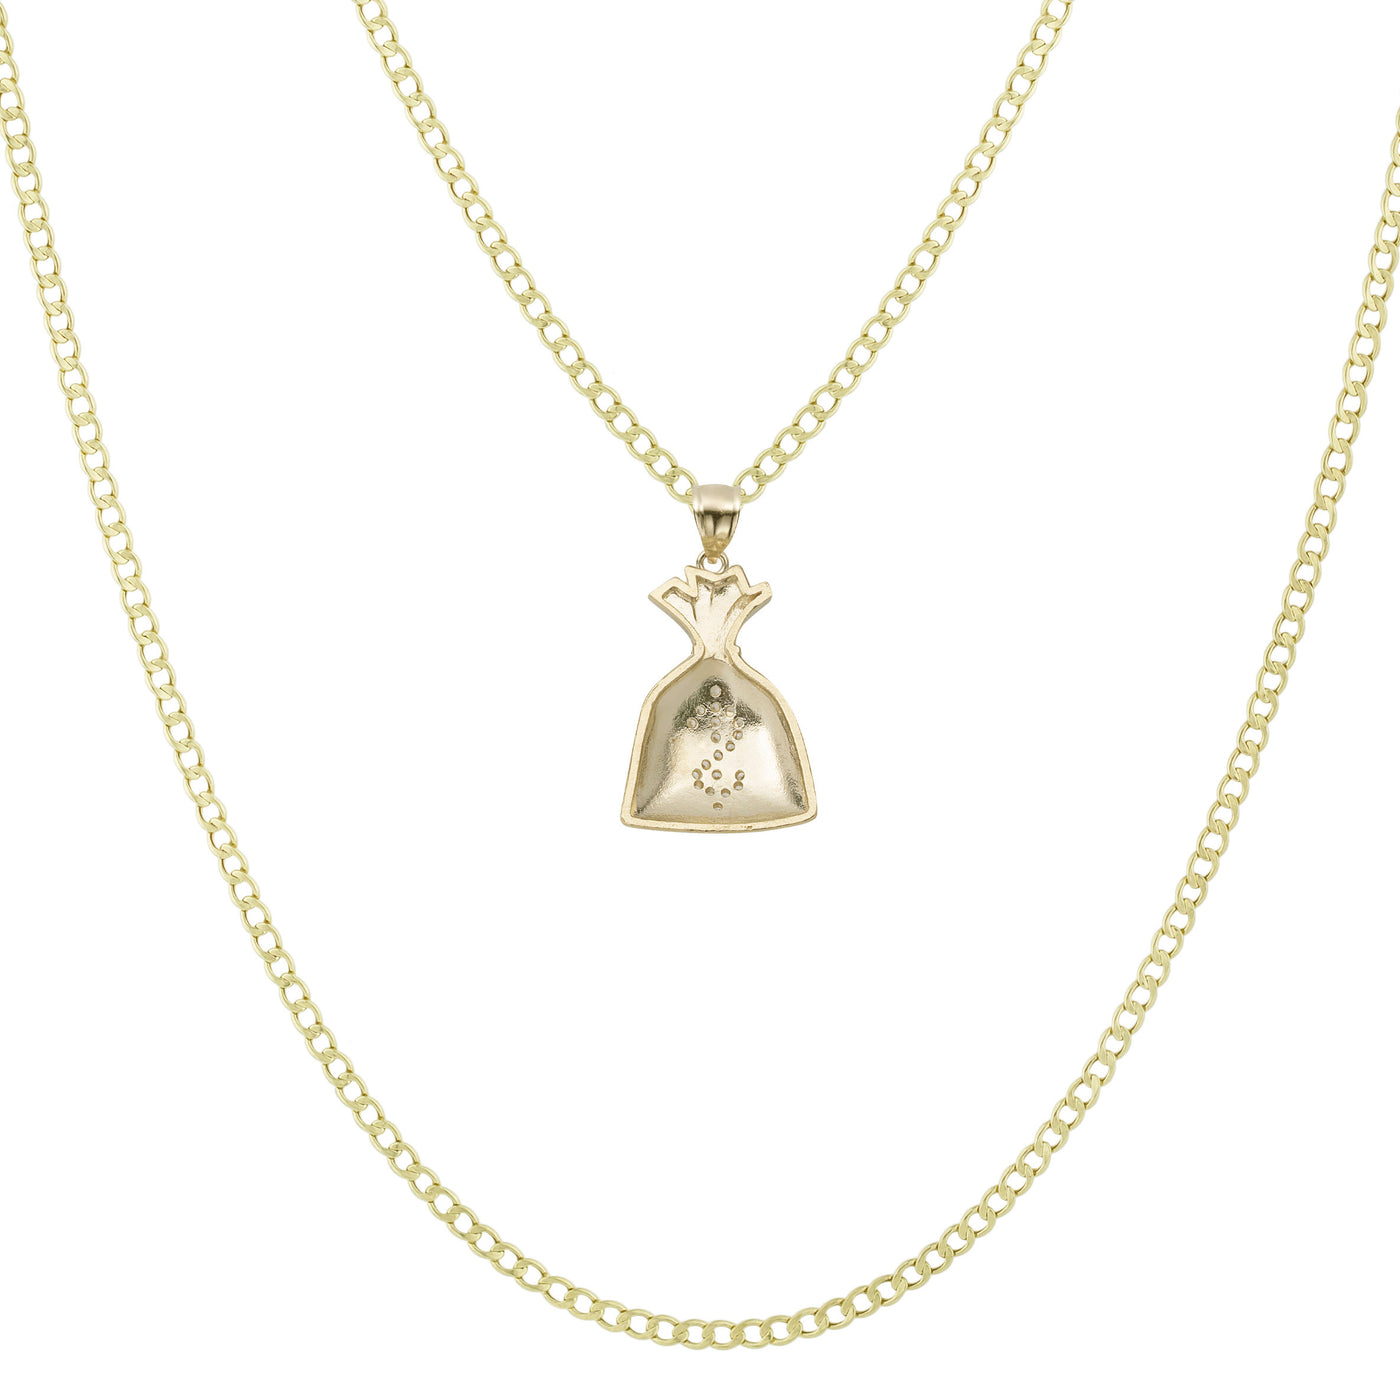 1 1/4" Money Bag CZ Pendant & Chain Necklace Set 10K Yellow Gold